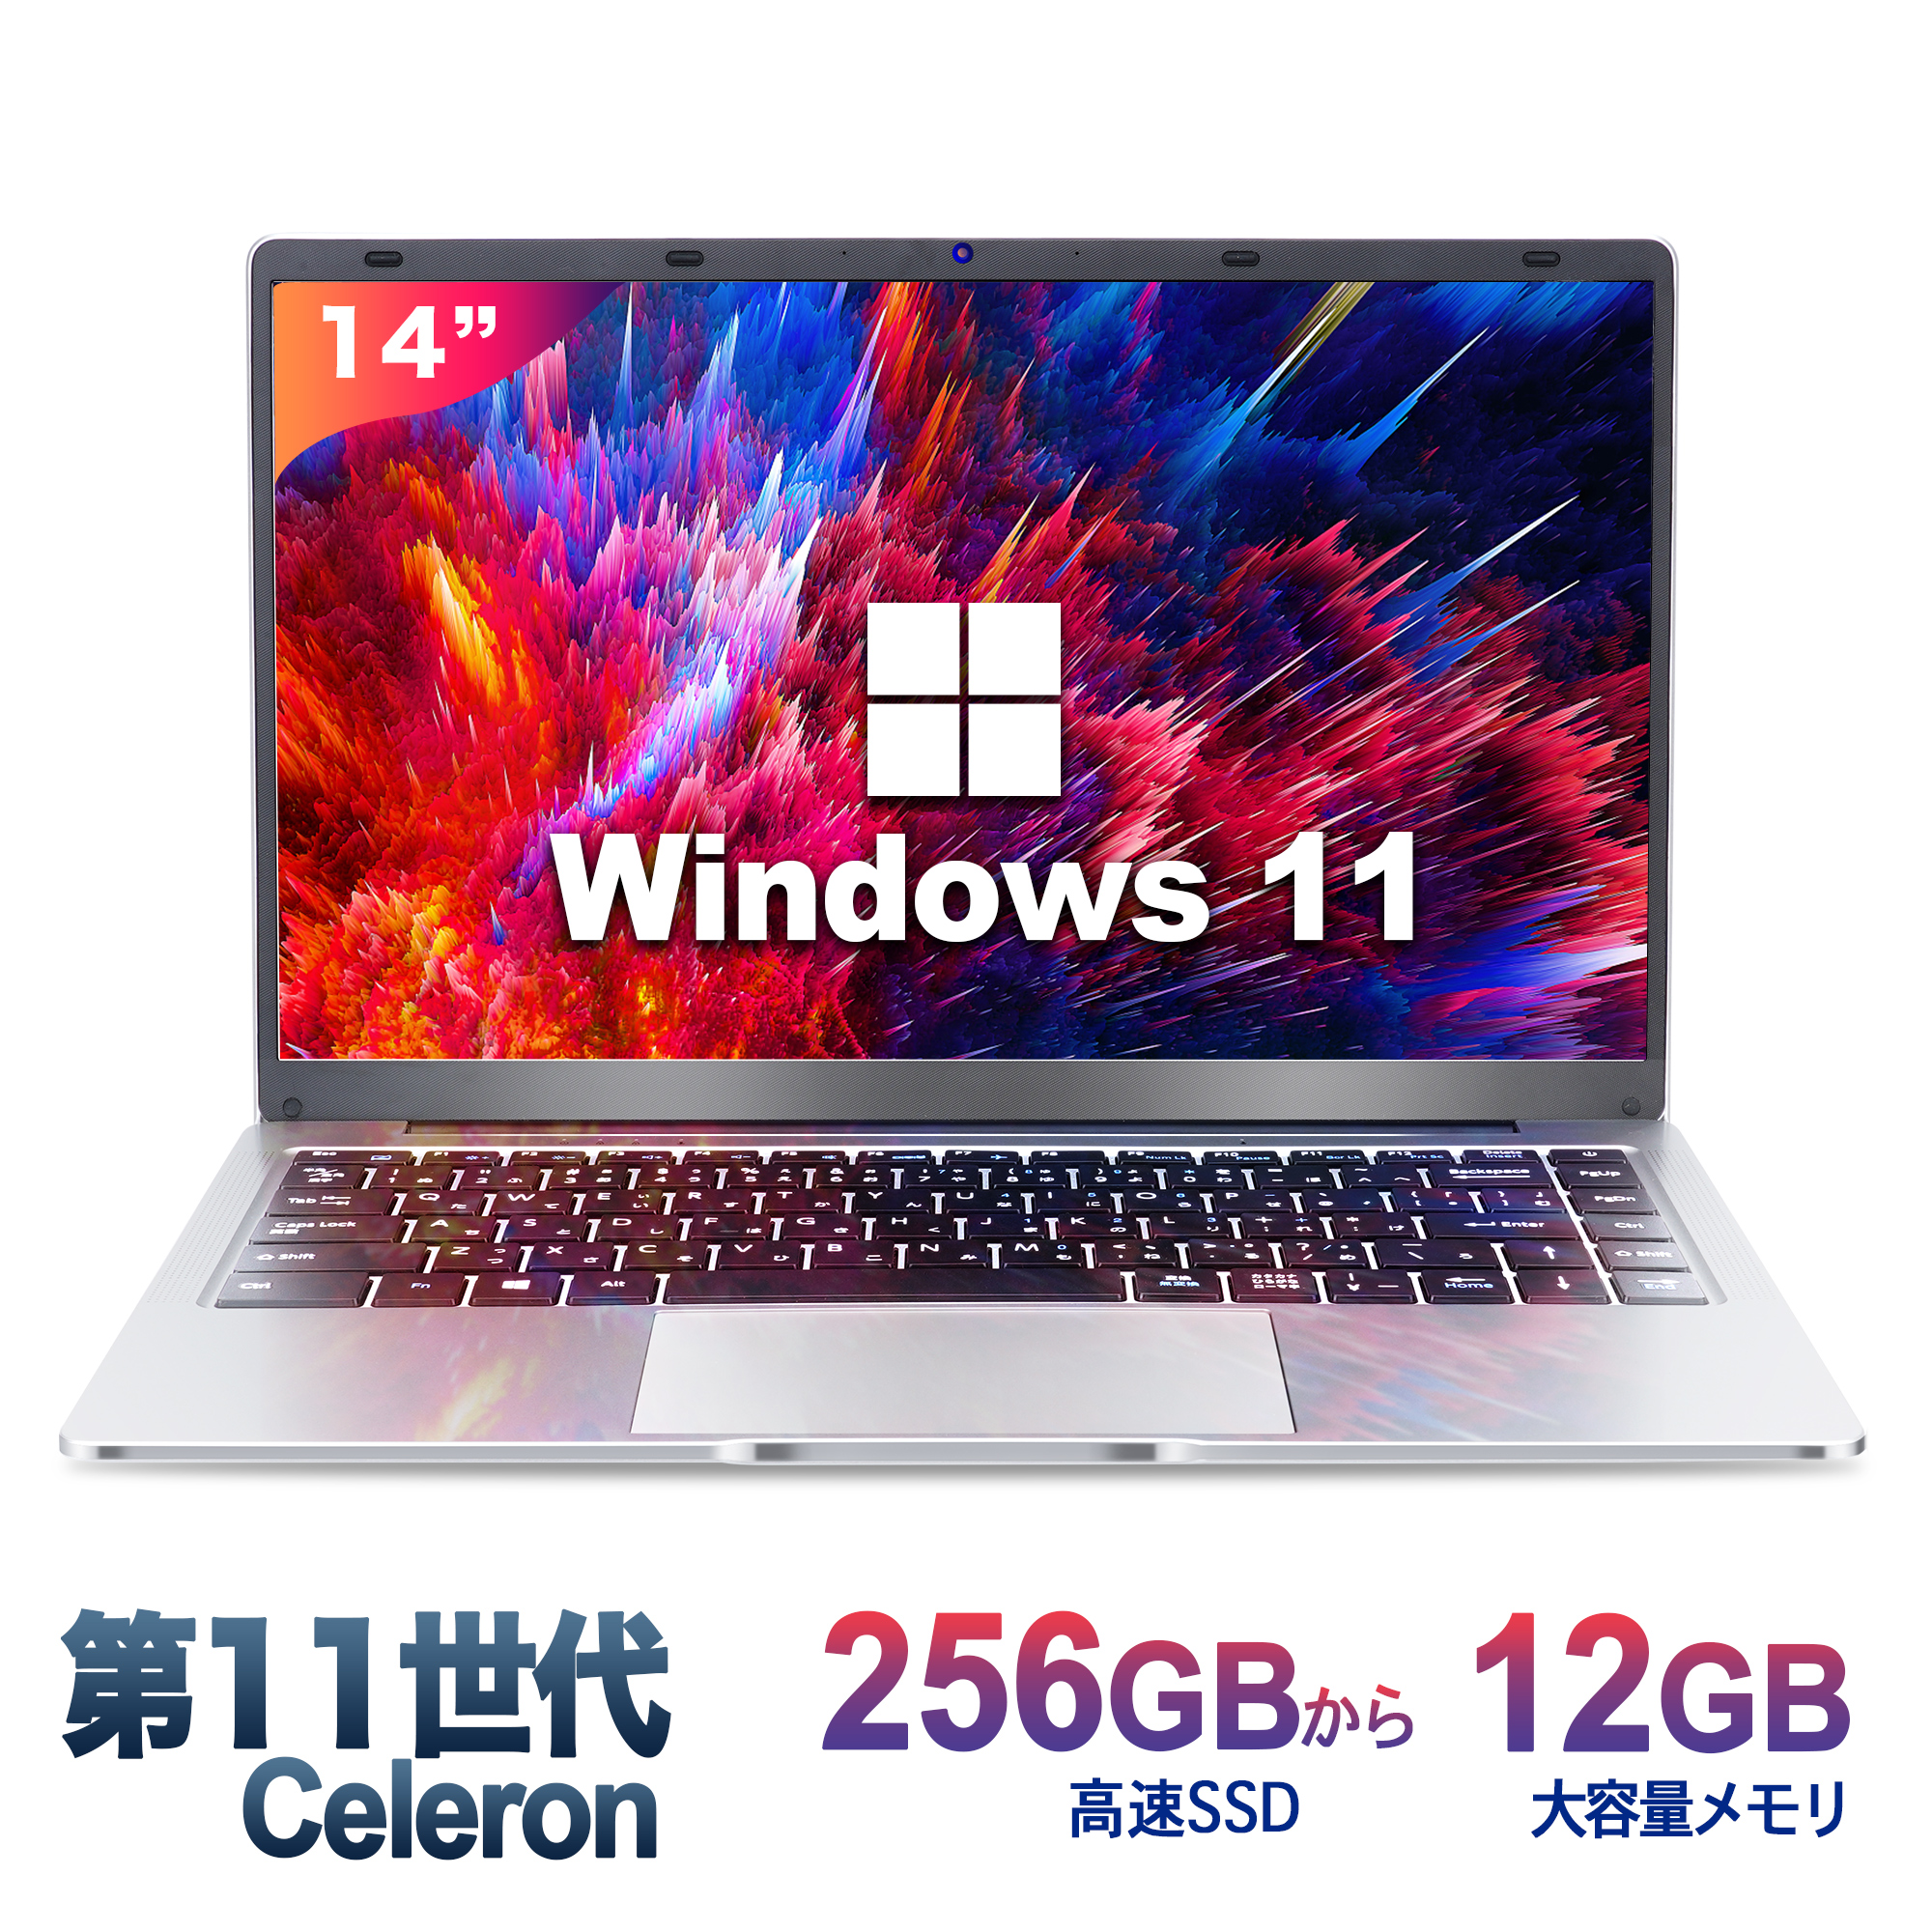 ノートパソコン office搭載 Windows11 ノートPC 14インチノートパソコン 12GB 256GB パソコンOffice2019搭載 薄型ノートPC インテルCeleron N3350 日本語キーボードデュアル USB3.0 WIFI Bluetooth テレワーク応援